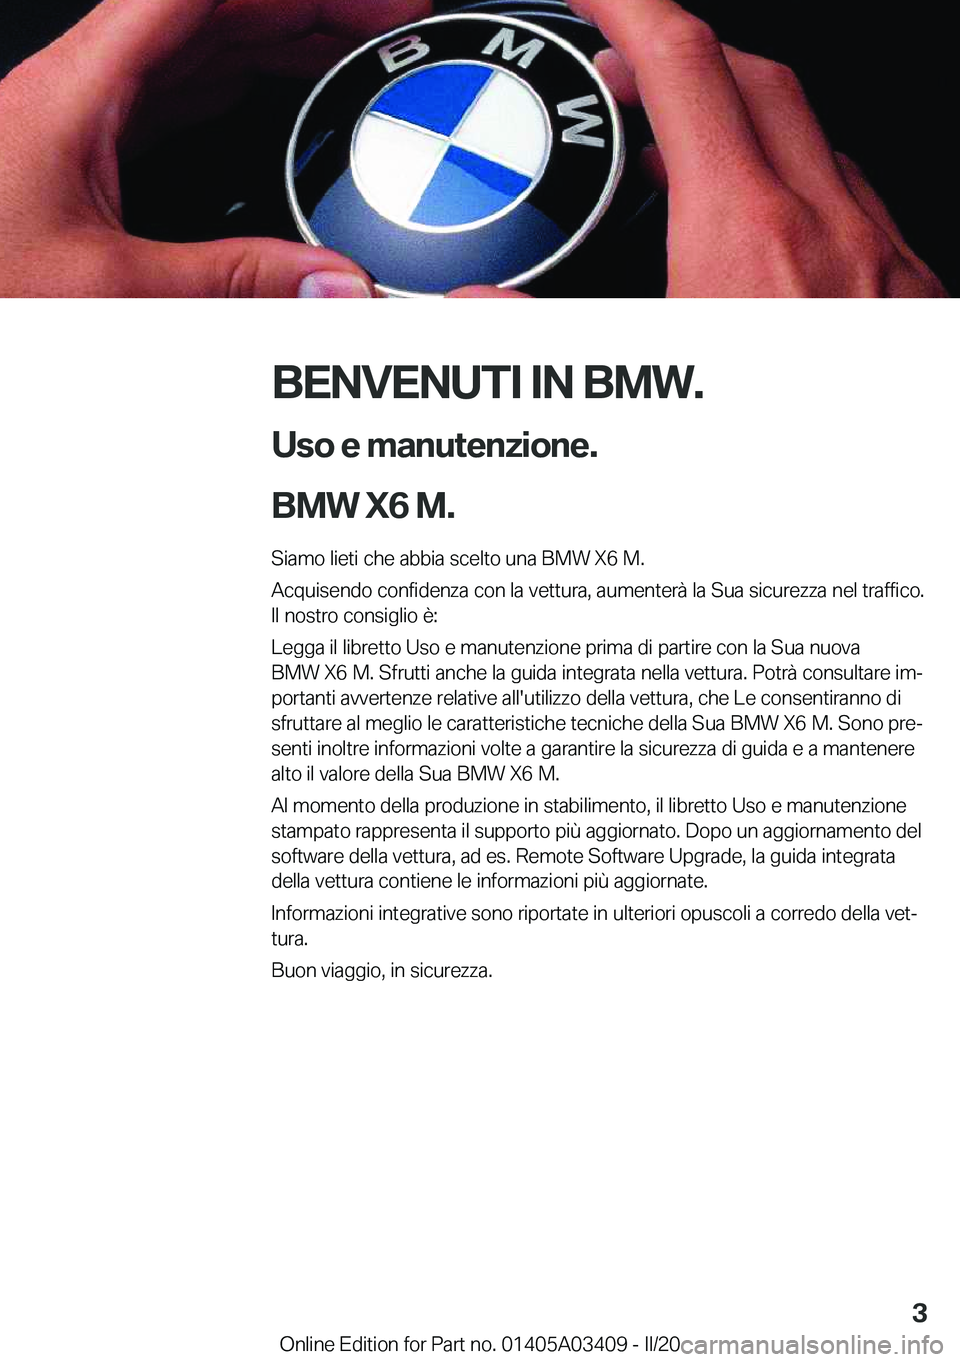 BMW X6 M 2020  Libretti Di Uso E manutenzione (in Italian) �B�E�N�V�E�N�U�T�I��I�N��B�M�W�.�U�s�o��e��m�a�n�u�t�e�n�z�i�o�n�e�.
�B�M�W��X�6��M�.
�S�i�a�m�o��l�i�e�t�i��c�h�e��a�b�b�i�a��s�c�e�l�t�o��u�n�a��B�M�W��X�6��M�.
�A�c�q�u�i�s�e�n�d�o��